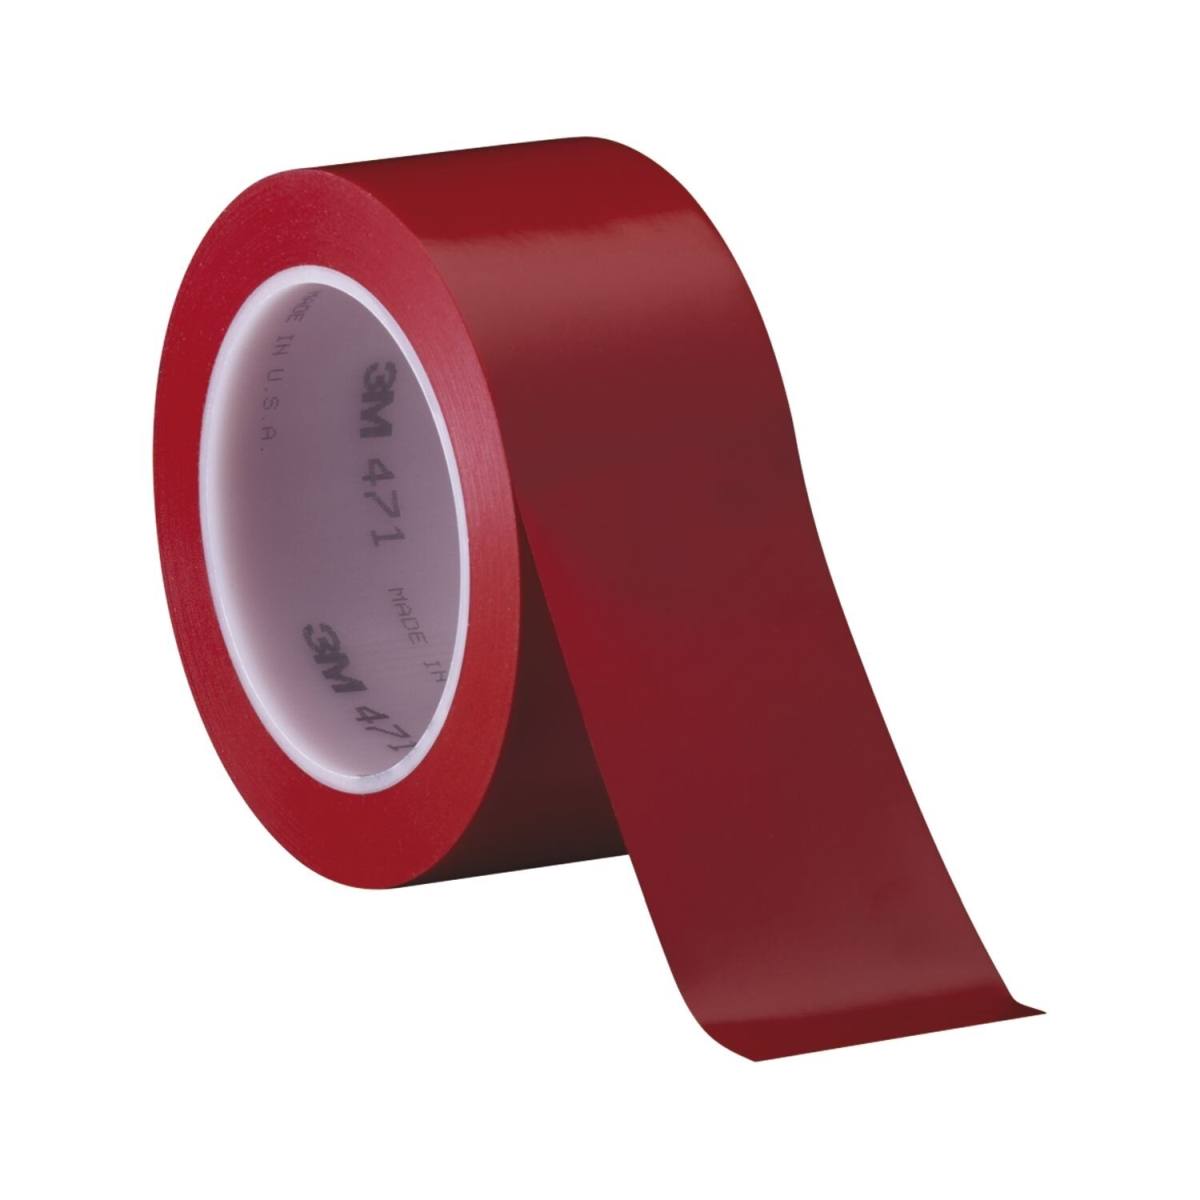 Nastro adesivo 3M in PVC morbido 471 F, rosso, 50 mm x 33 m, 0,13 mm, confezionato singolarmente e in modo pratico